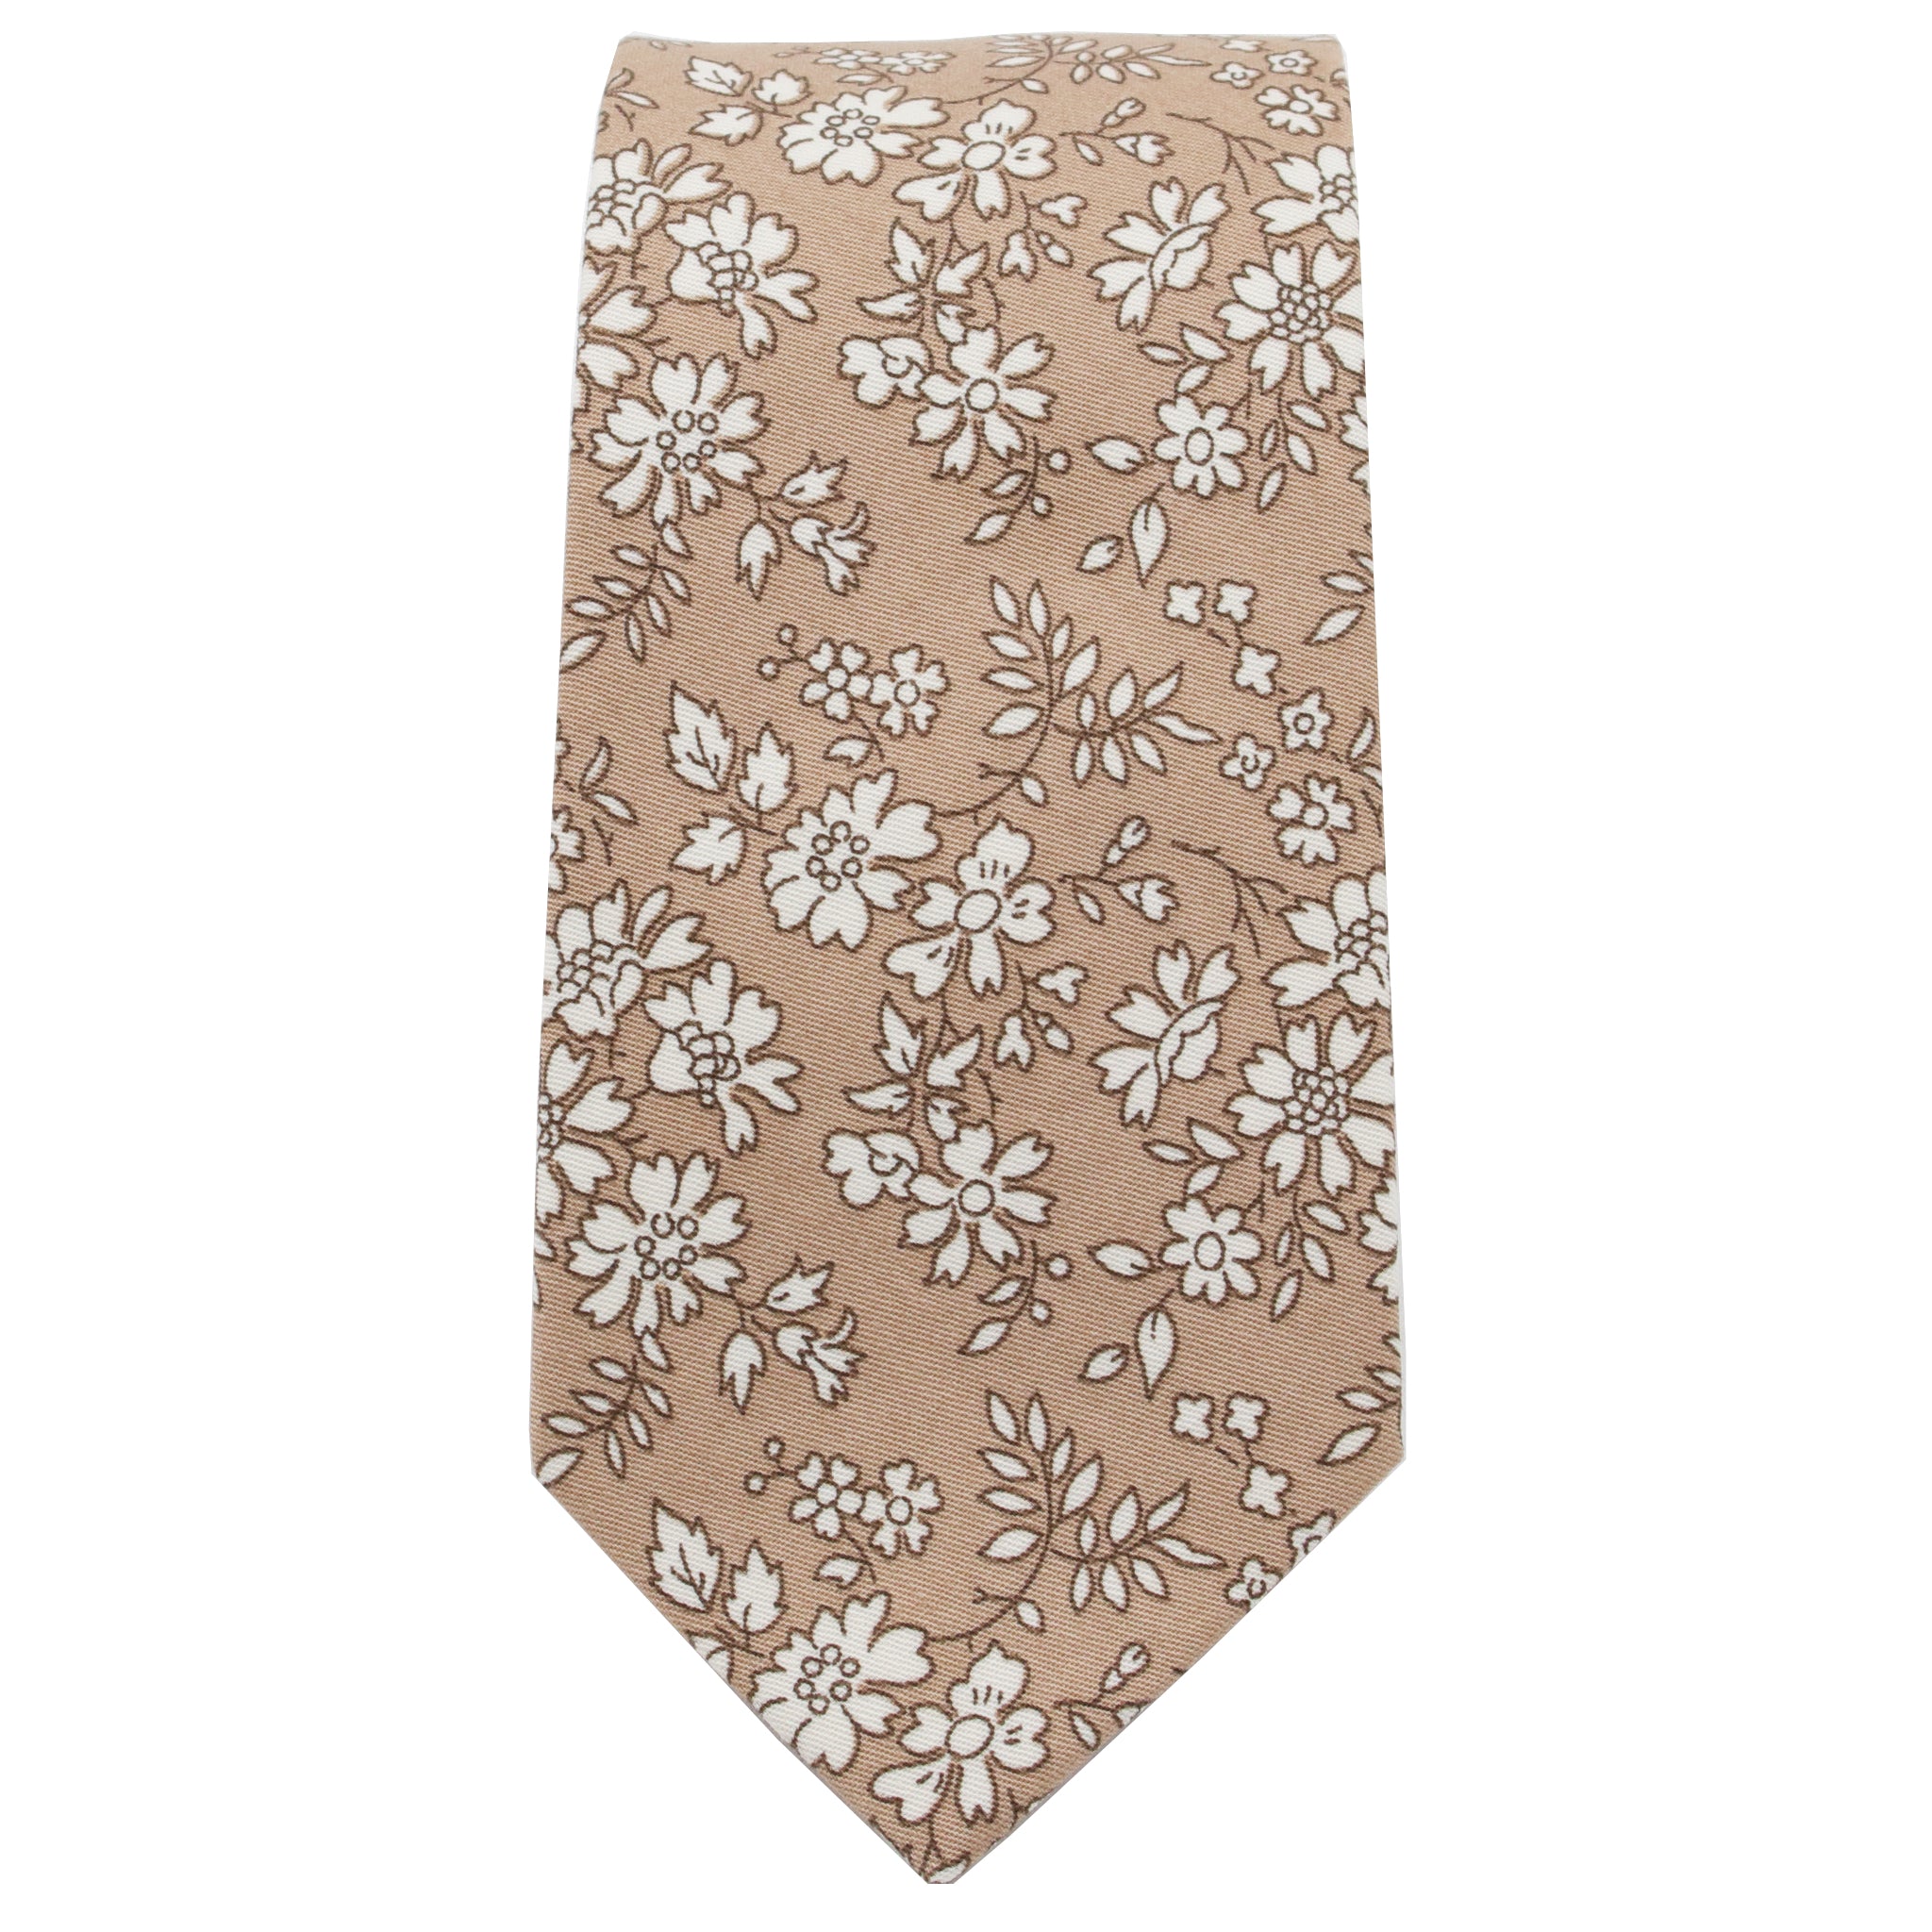 Beige & White Floral Tie